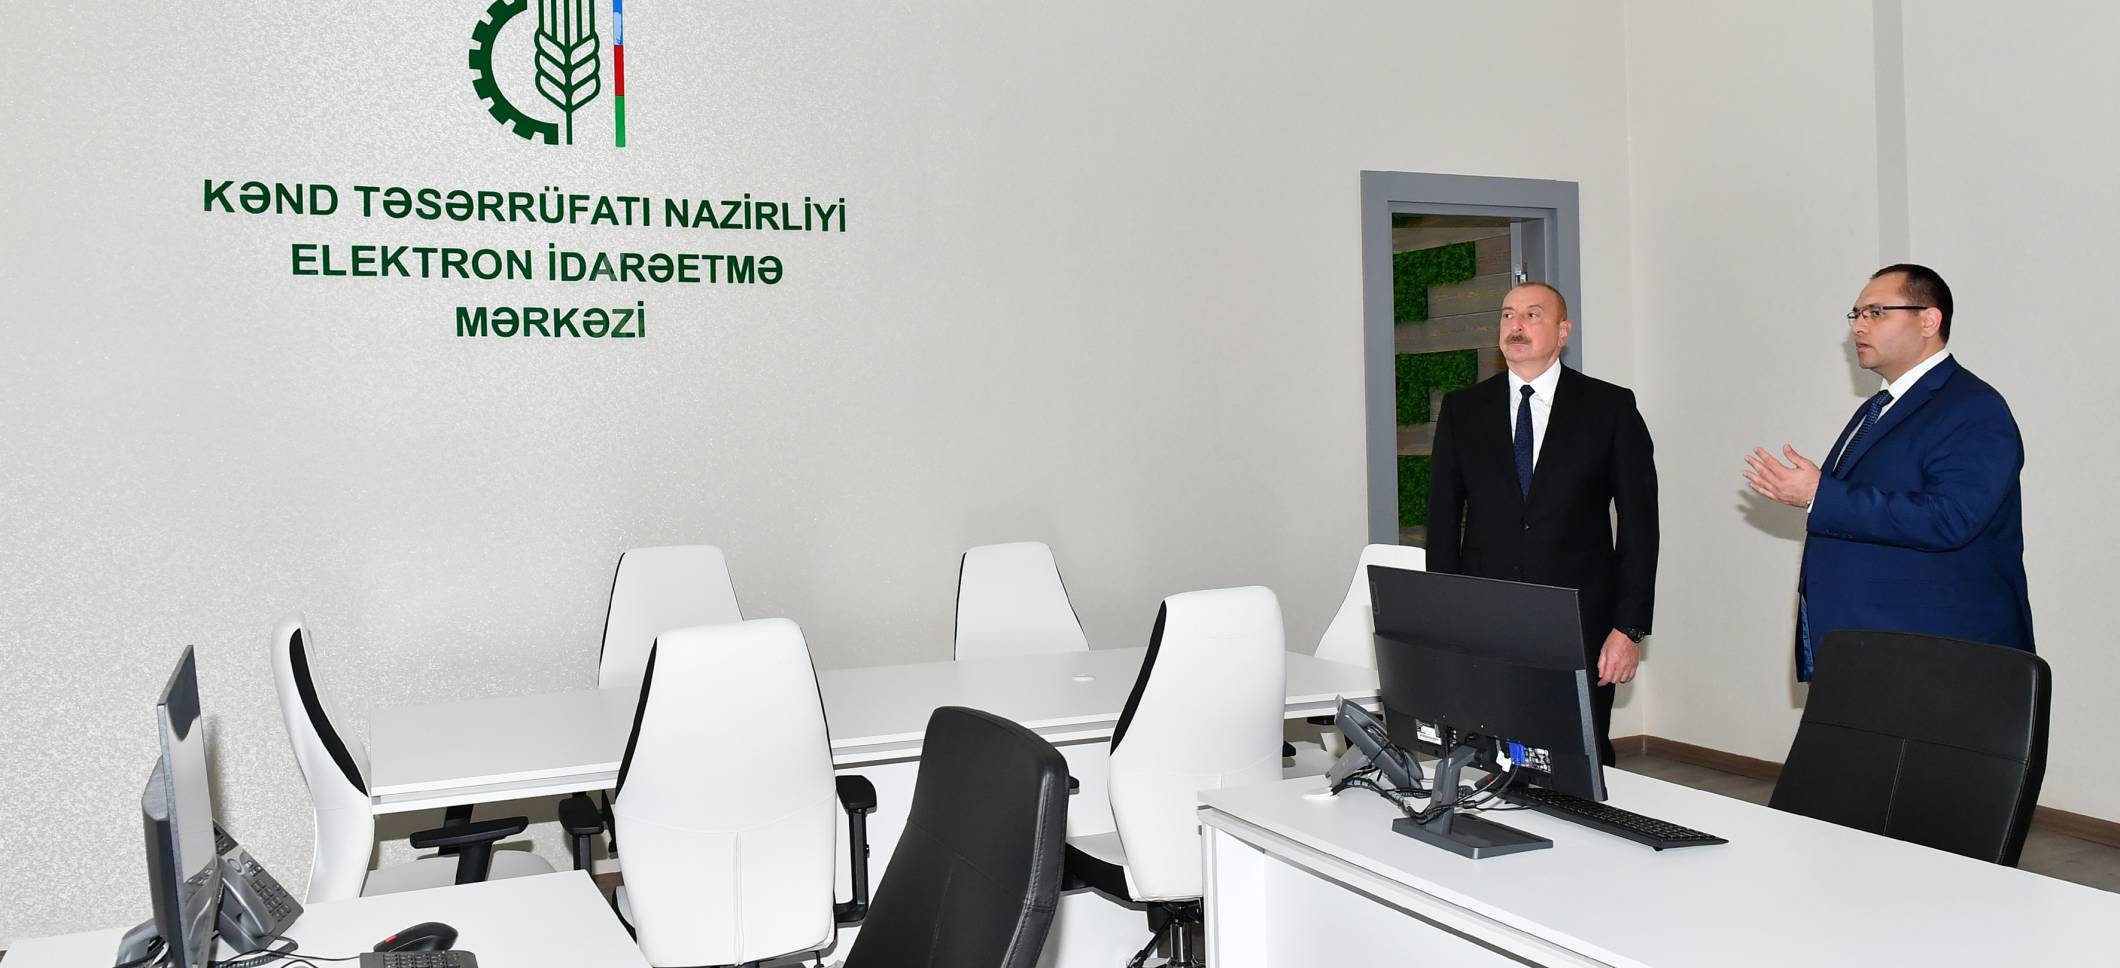 Ильхам Алиев принял участие в открытии нового административного здания Министерства сельского хозяйства в Баку